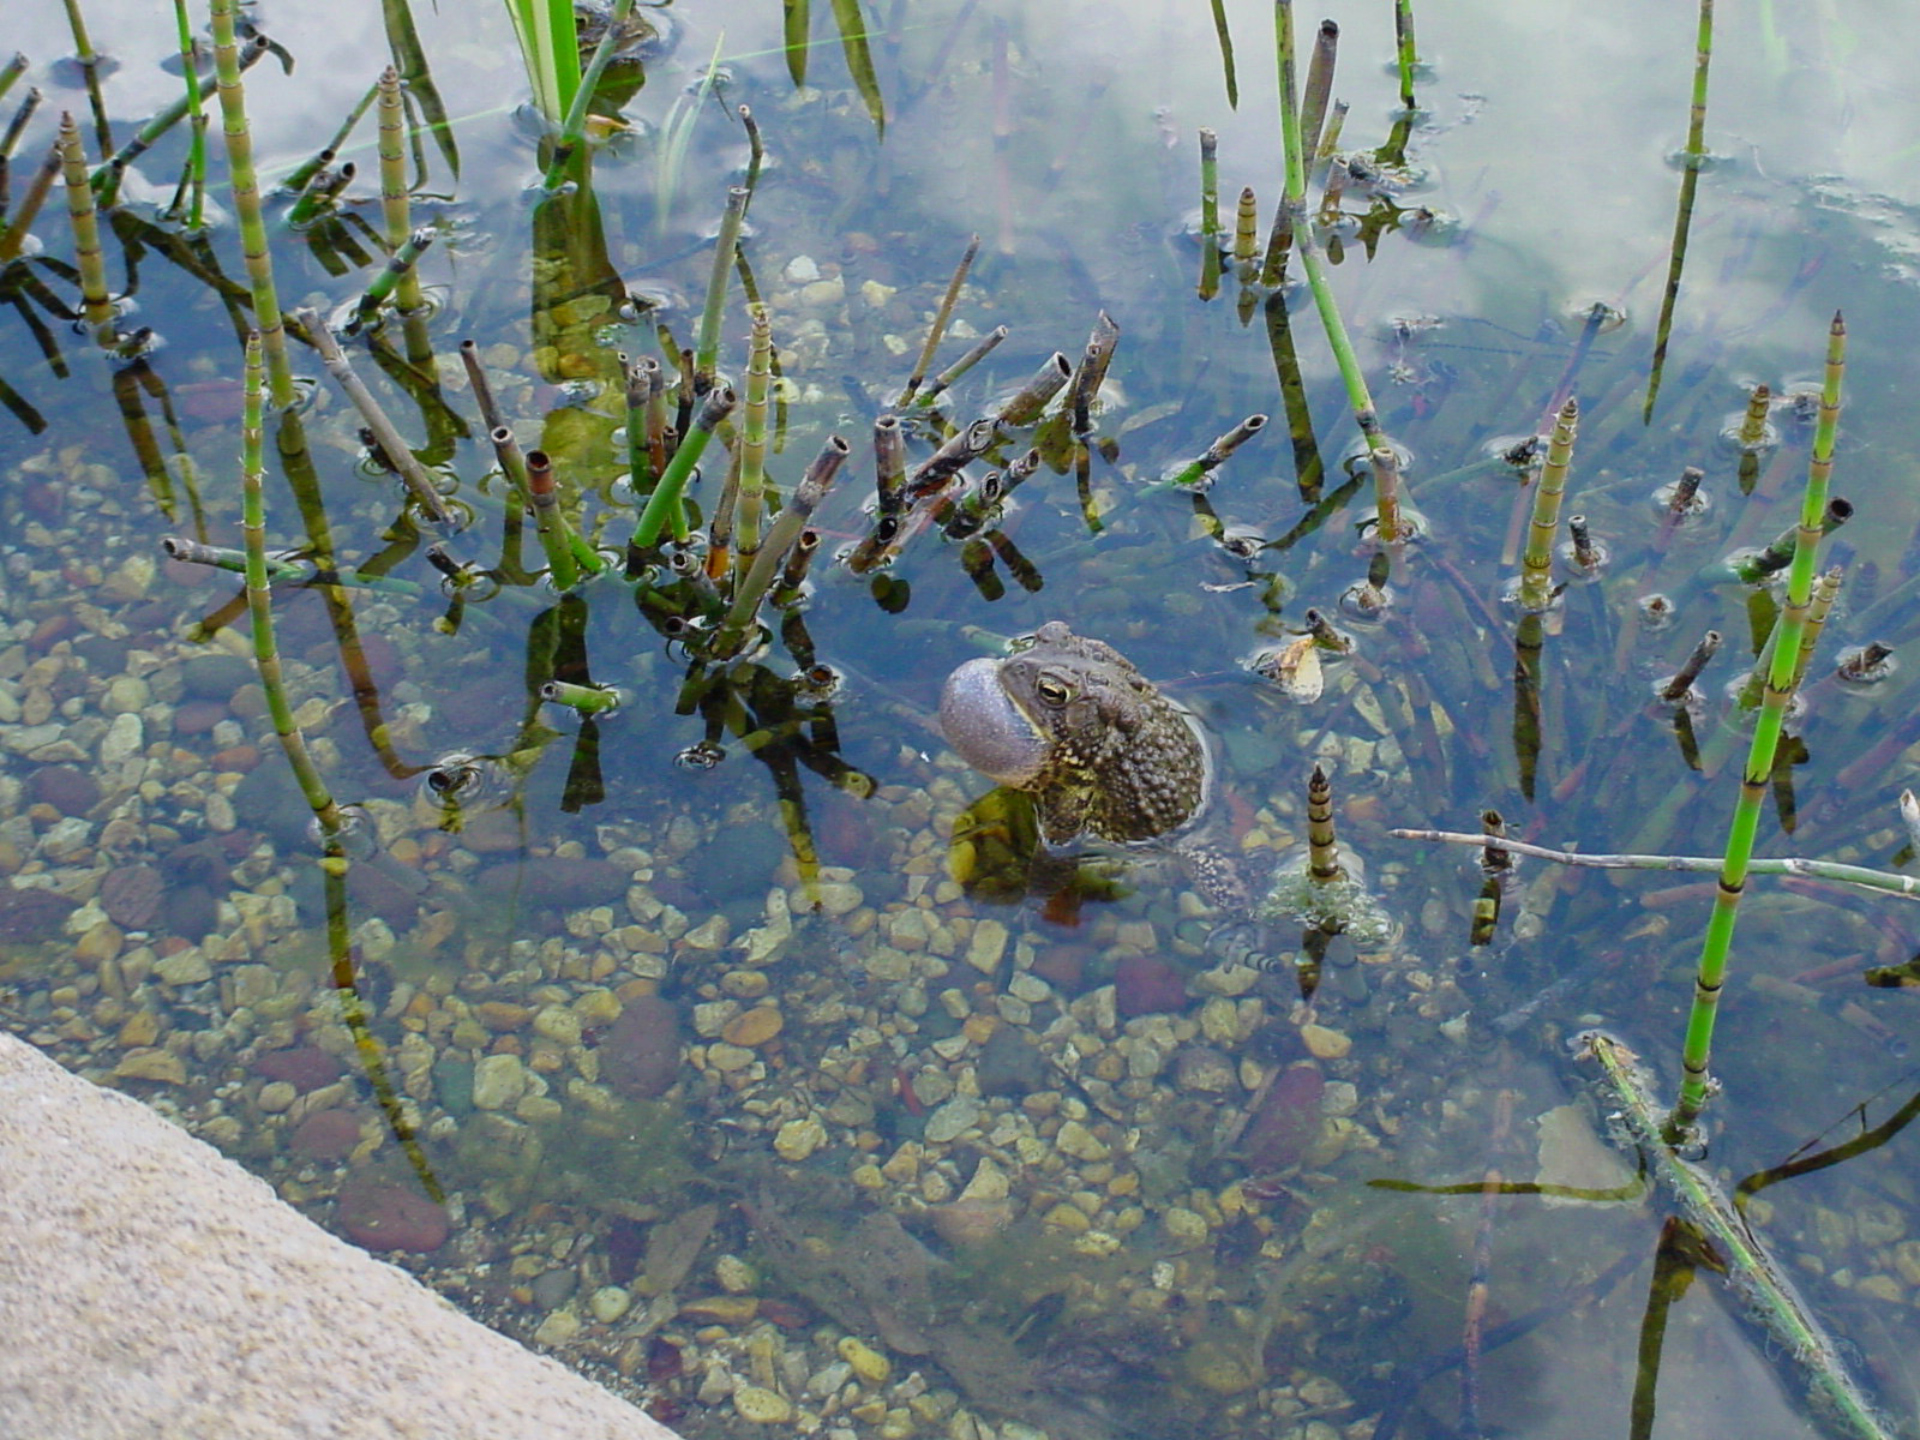 A frog sitting in Wonder Pond in the Children's Garden